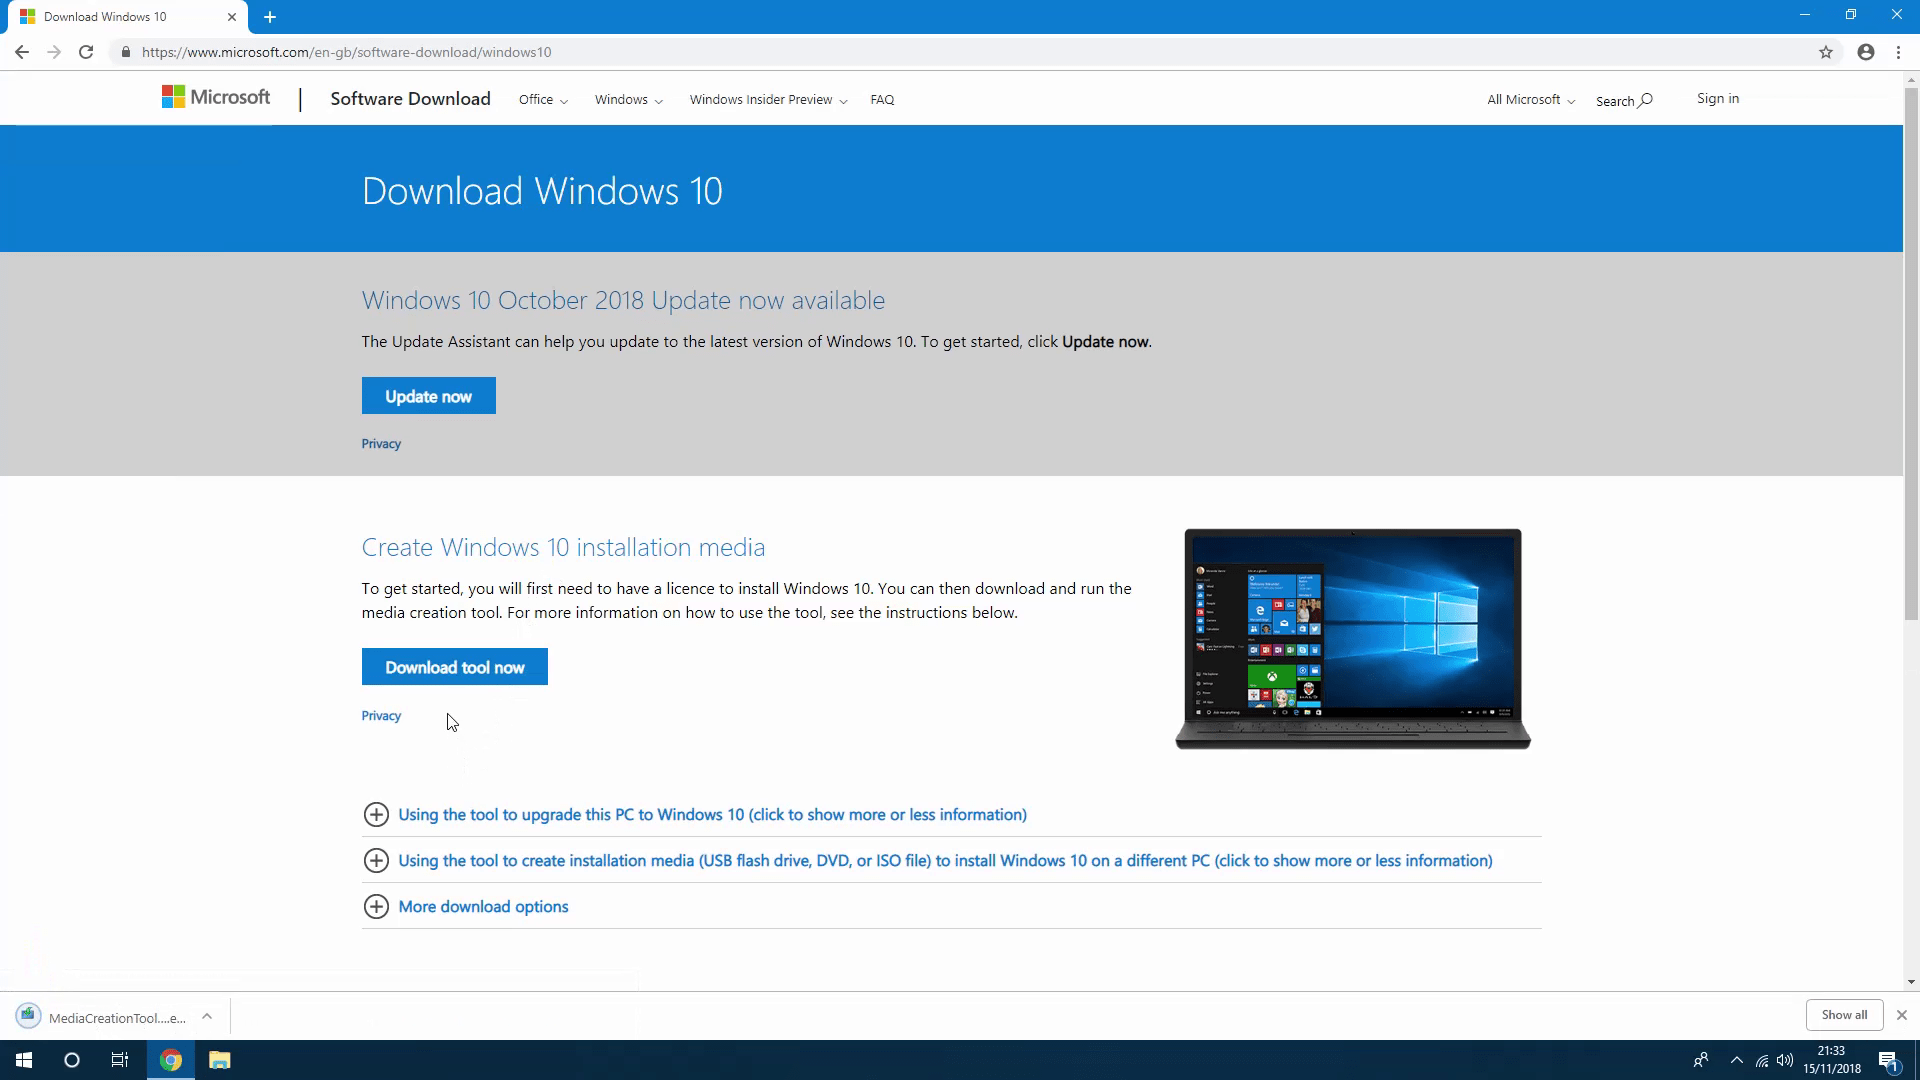 Windows 10 update tool download